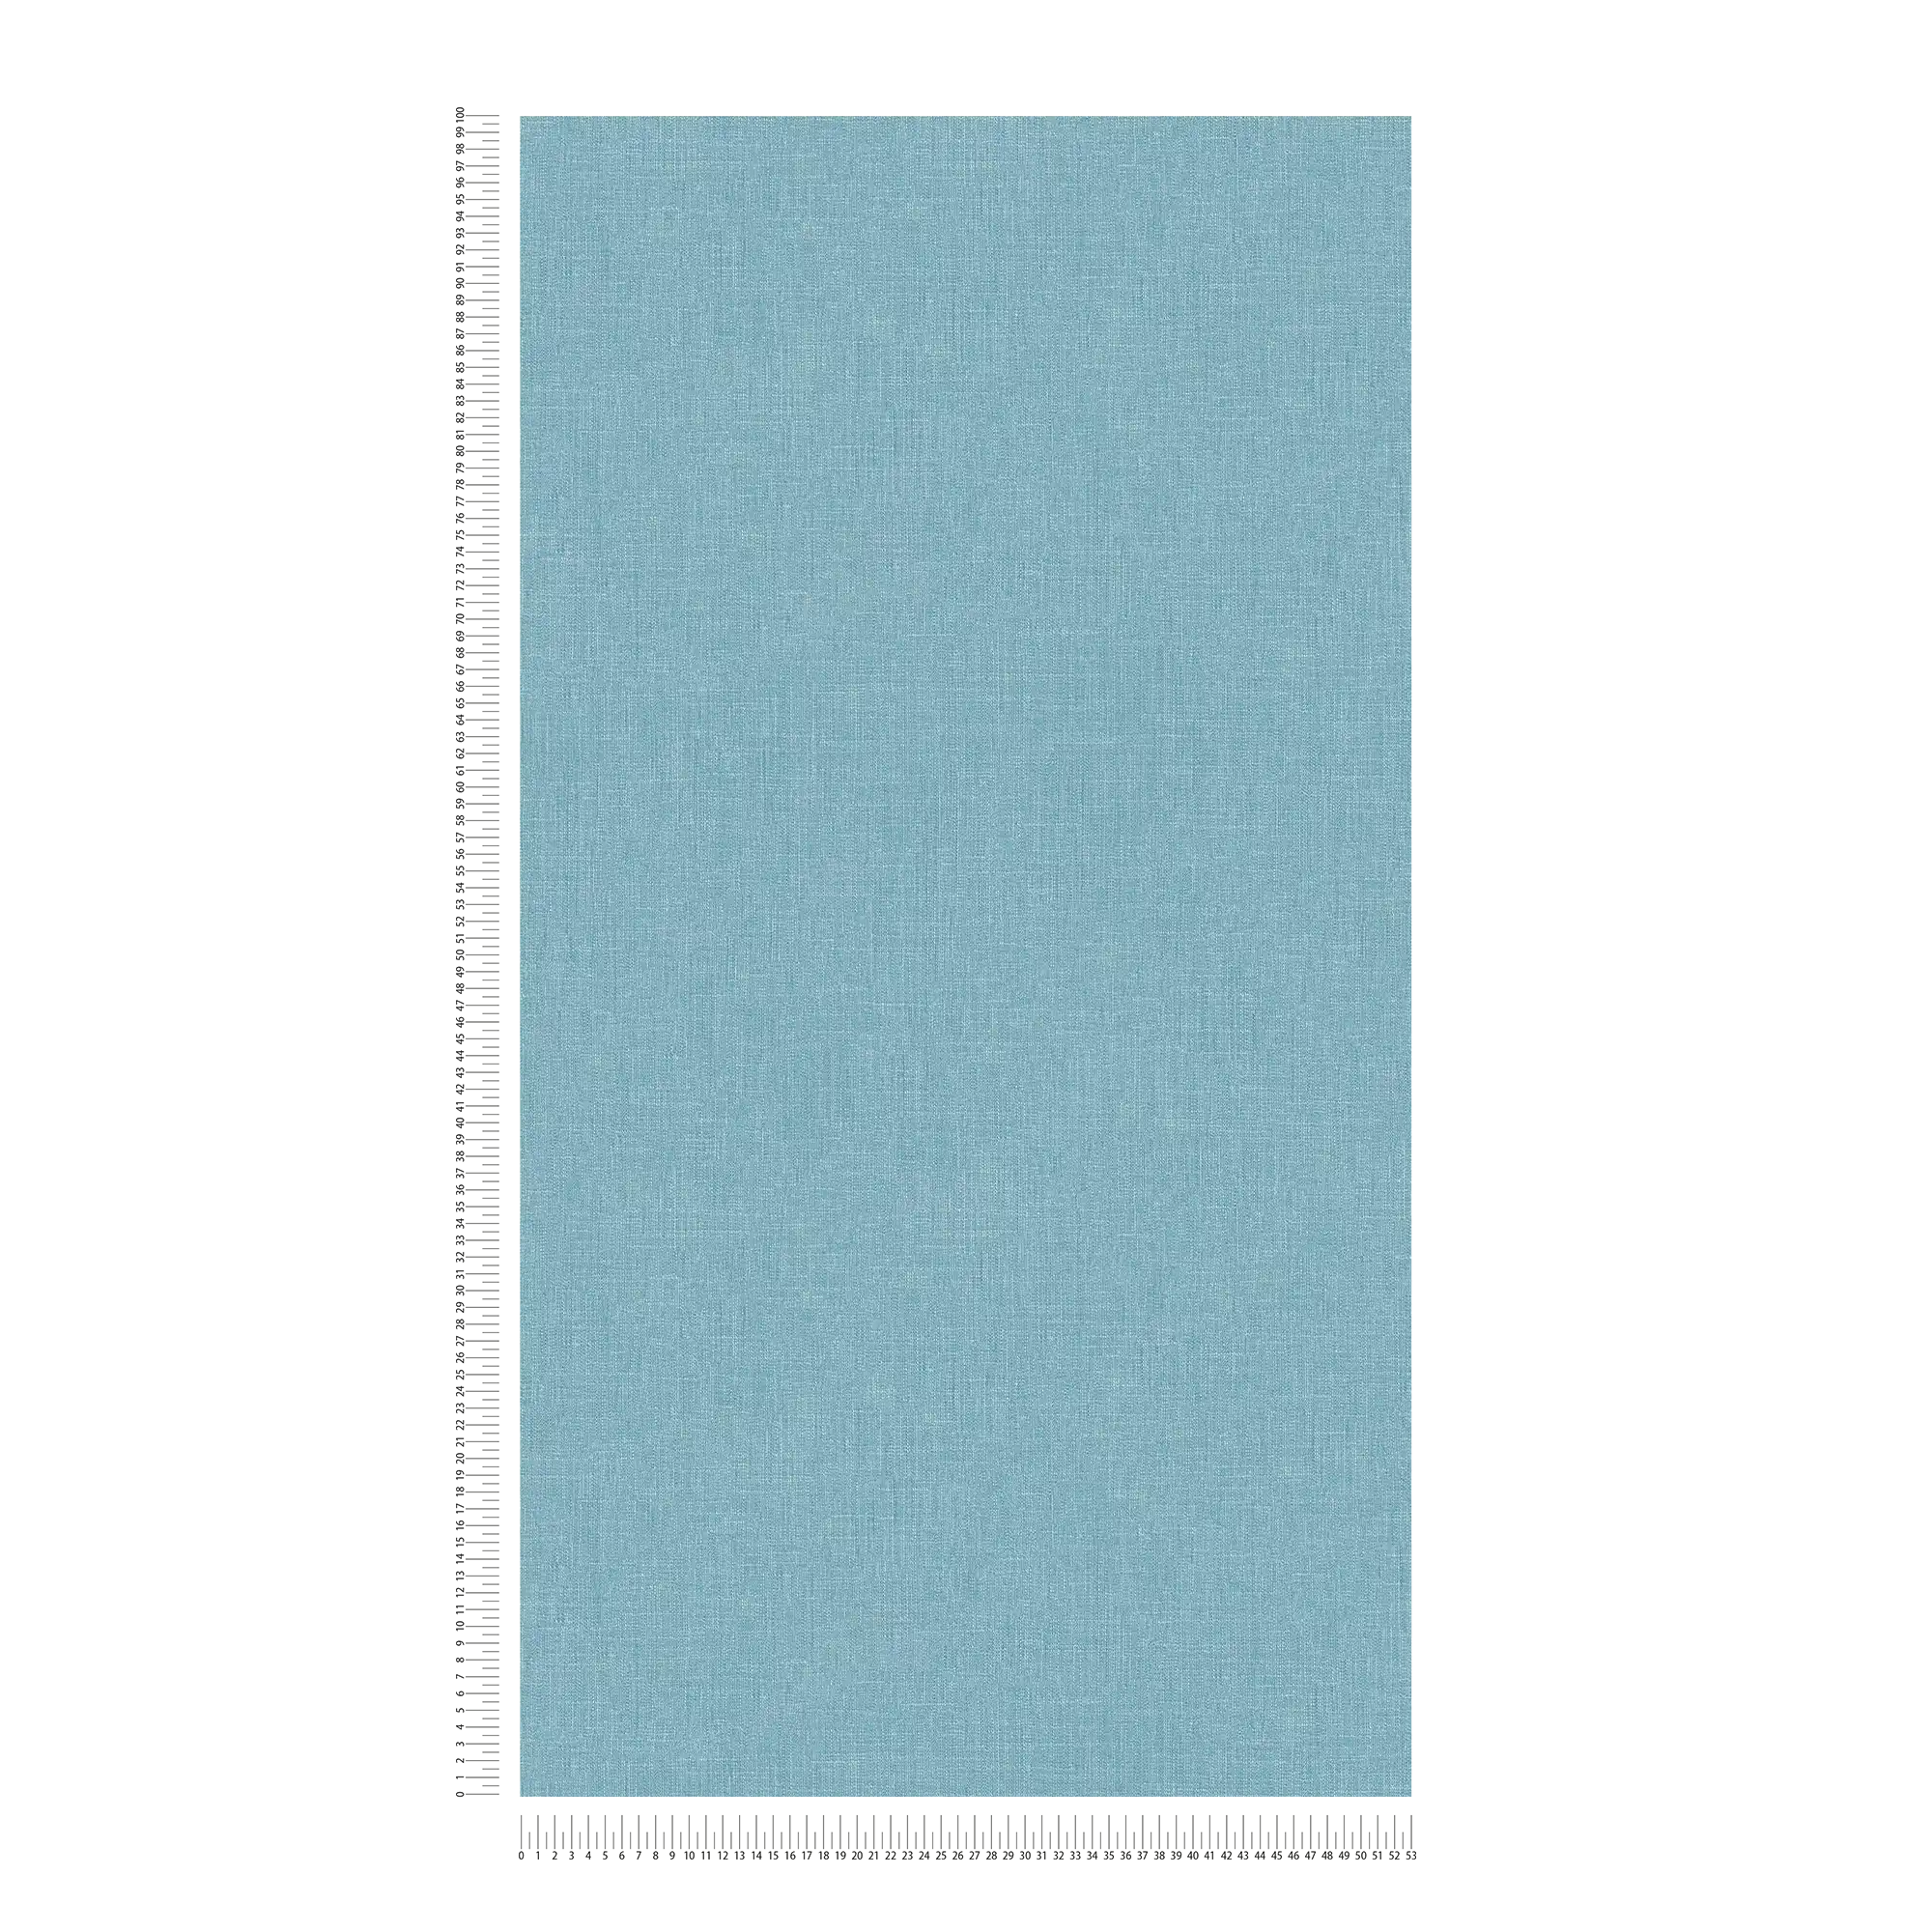             Papier peint intissé bleu chiné avec structure textile style bouclé
        